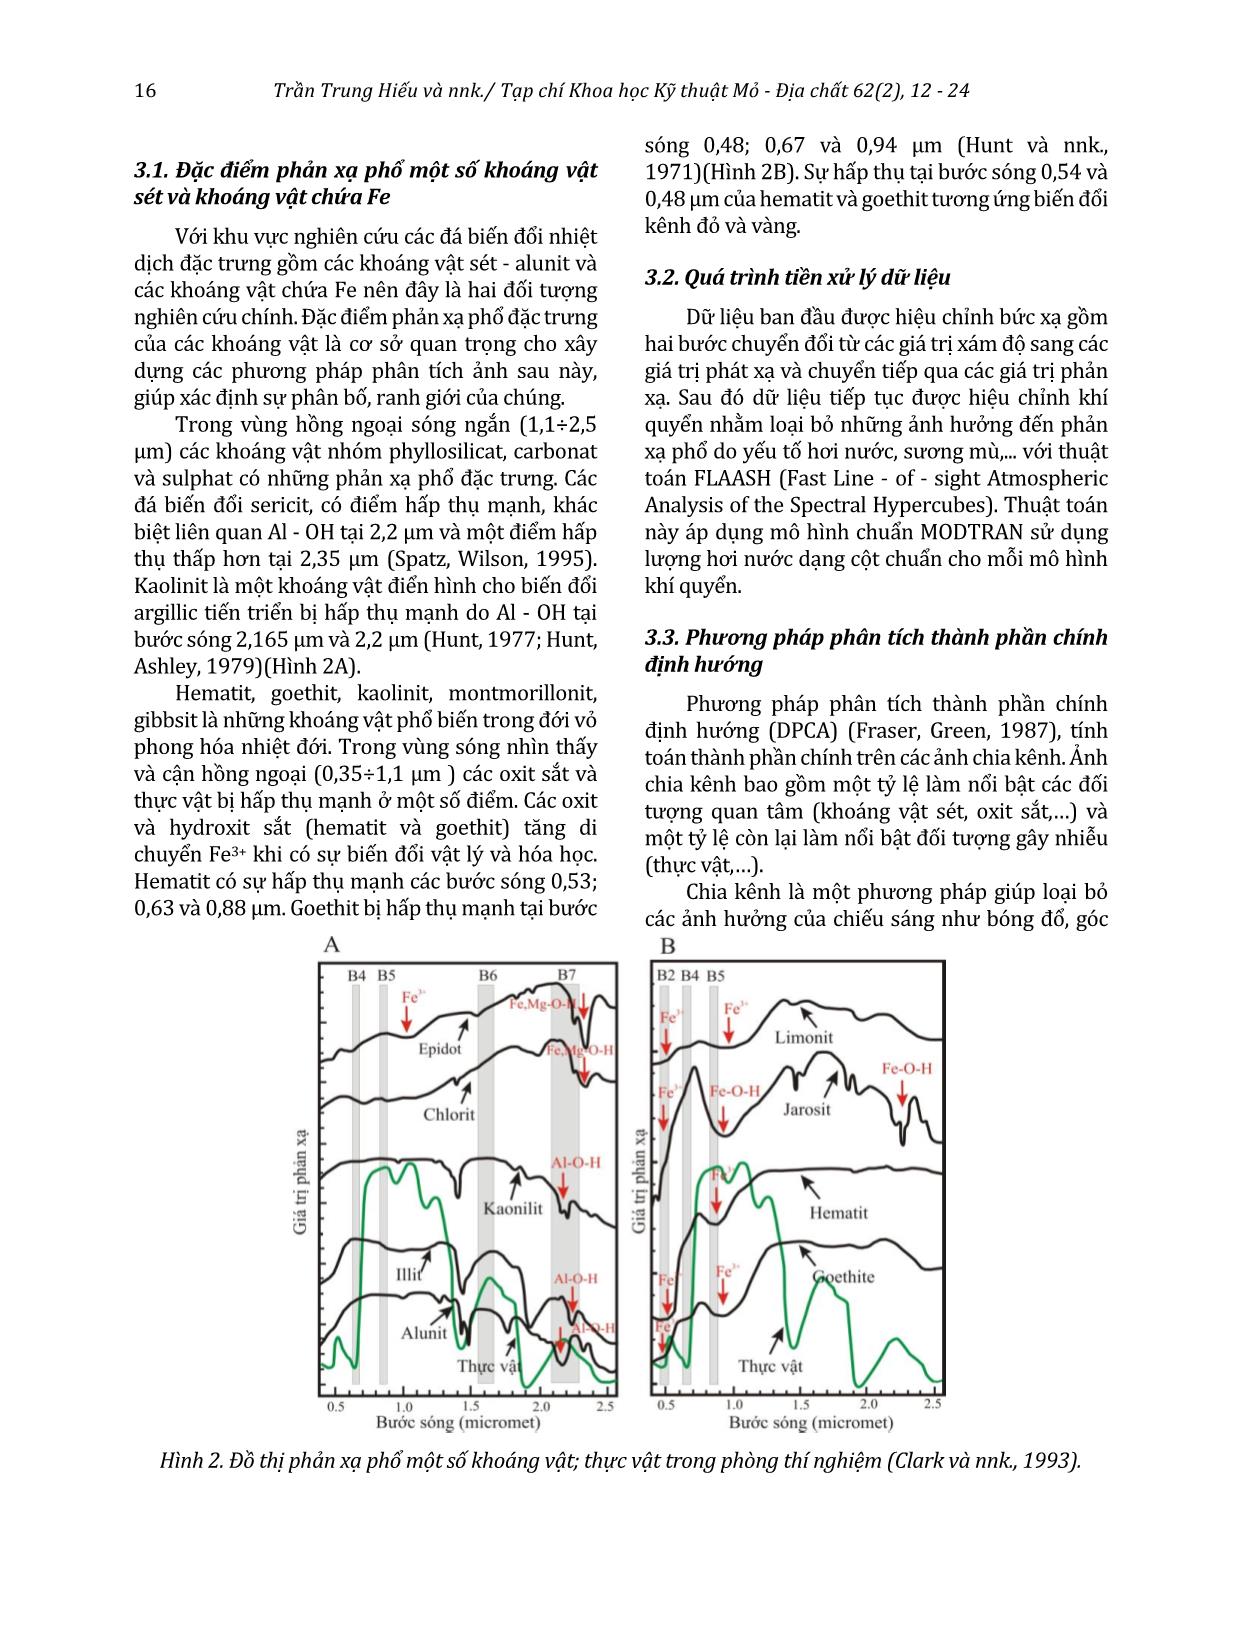 Xác định các đới biến đổi giàu khoáng vật sét và oxit sắt sử dụng ảnh Landsat 8 khu vực Pu Sam Cáp, Lai Châu trang 5